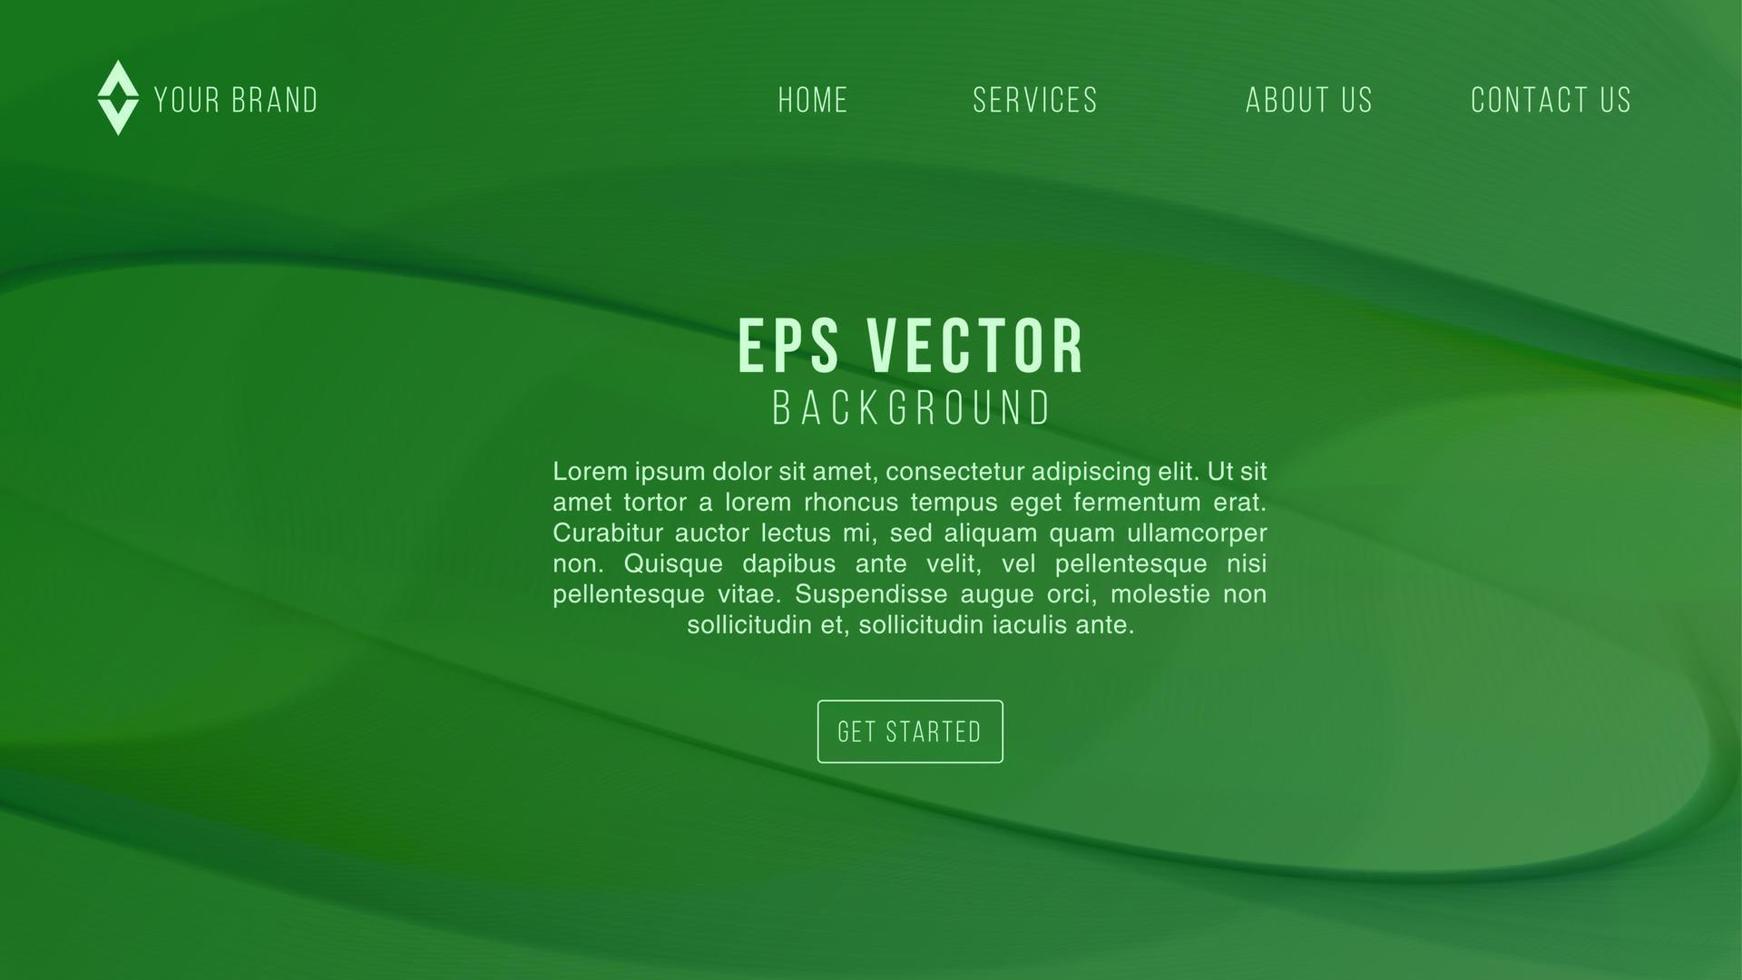 diseño web verde fondo abstracto limonada eps 10 vector para sitio web, página de inicio, página de inicio, página web, plantilla web